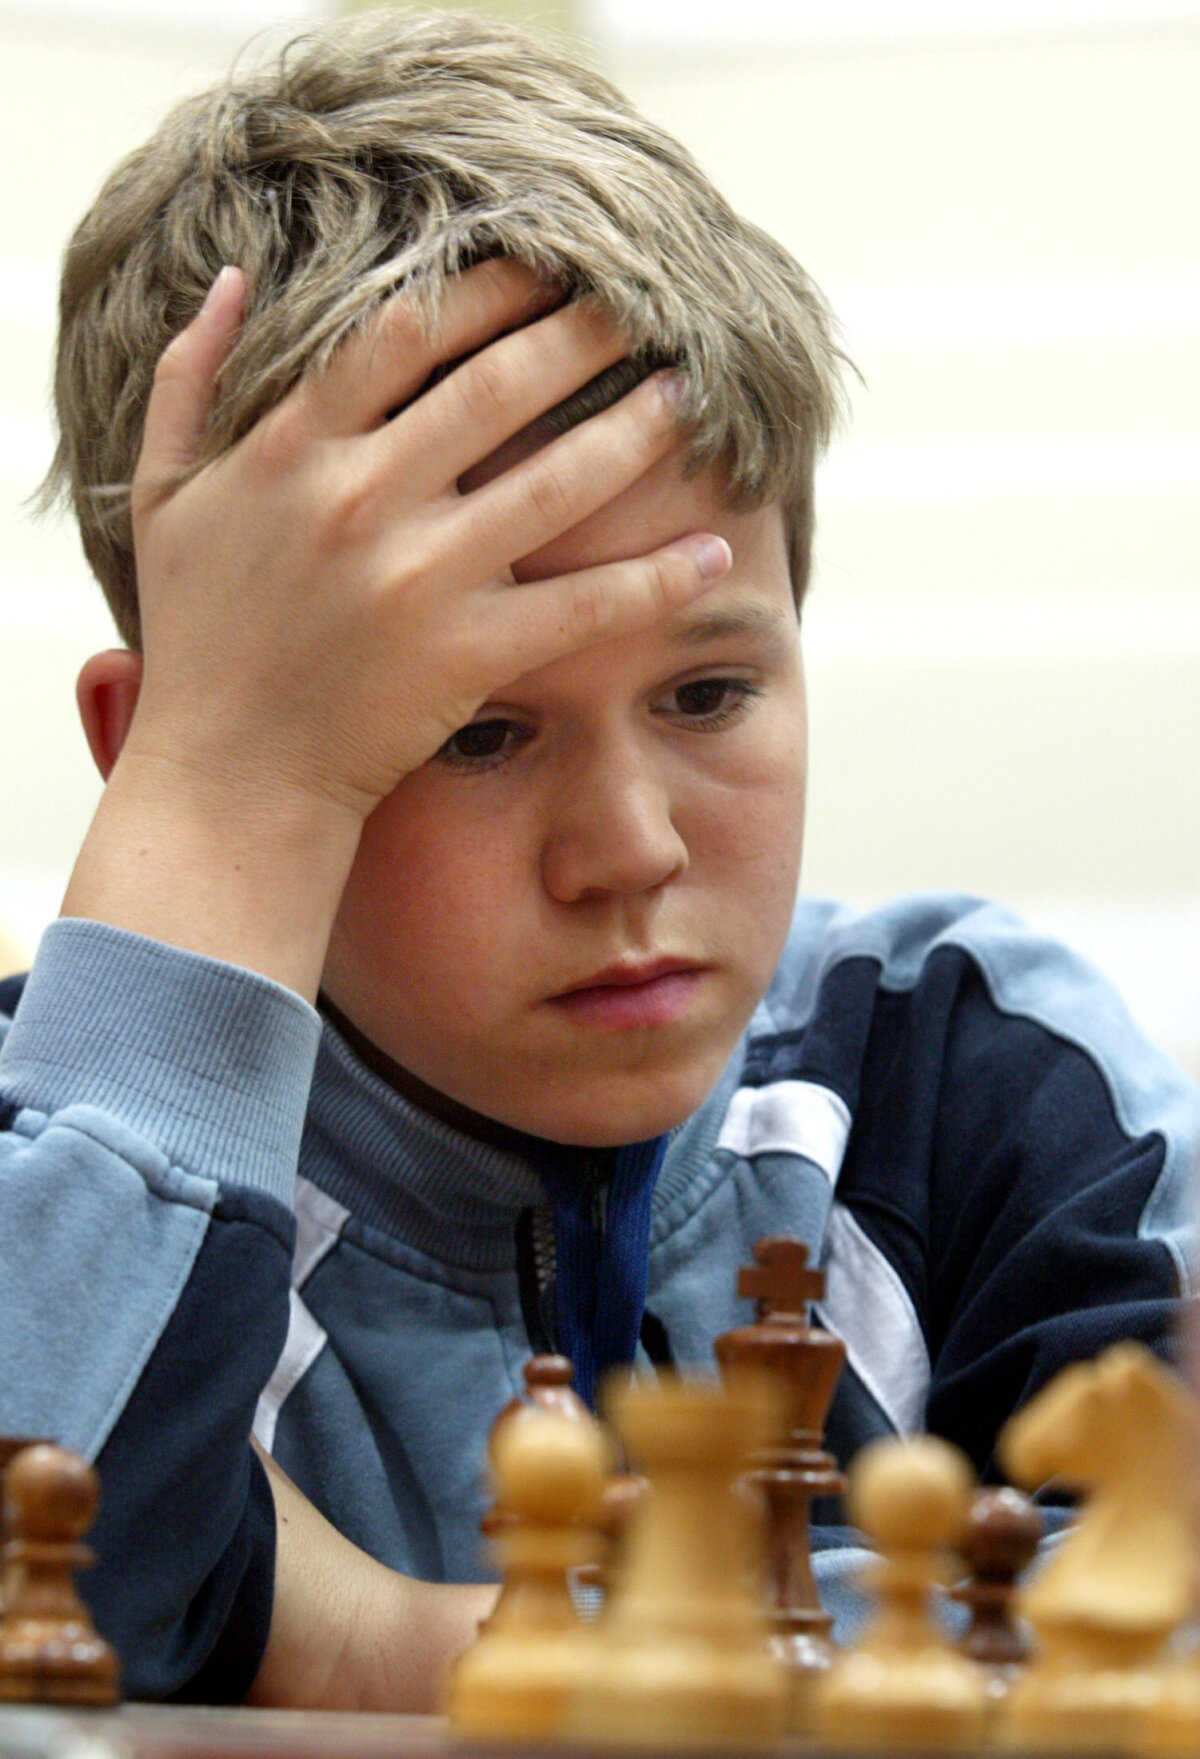 Jocul lui Magnus » Noul campion mondial de şah are o poveste fascinantă, în care geniul şi excelenţa s-au văzut foarte devreme